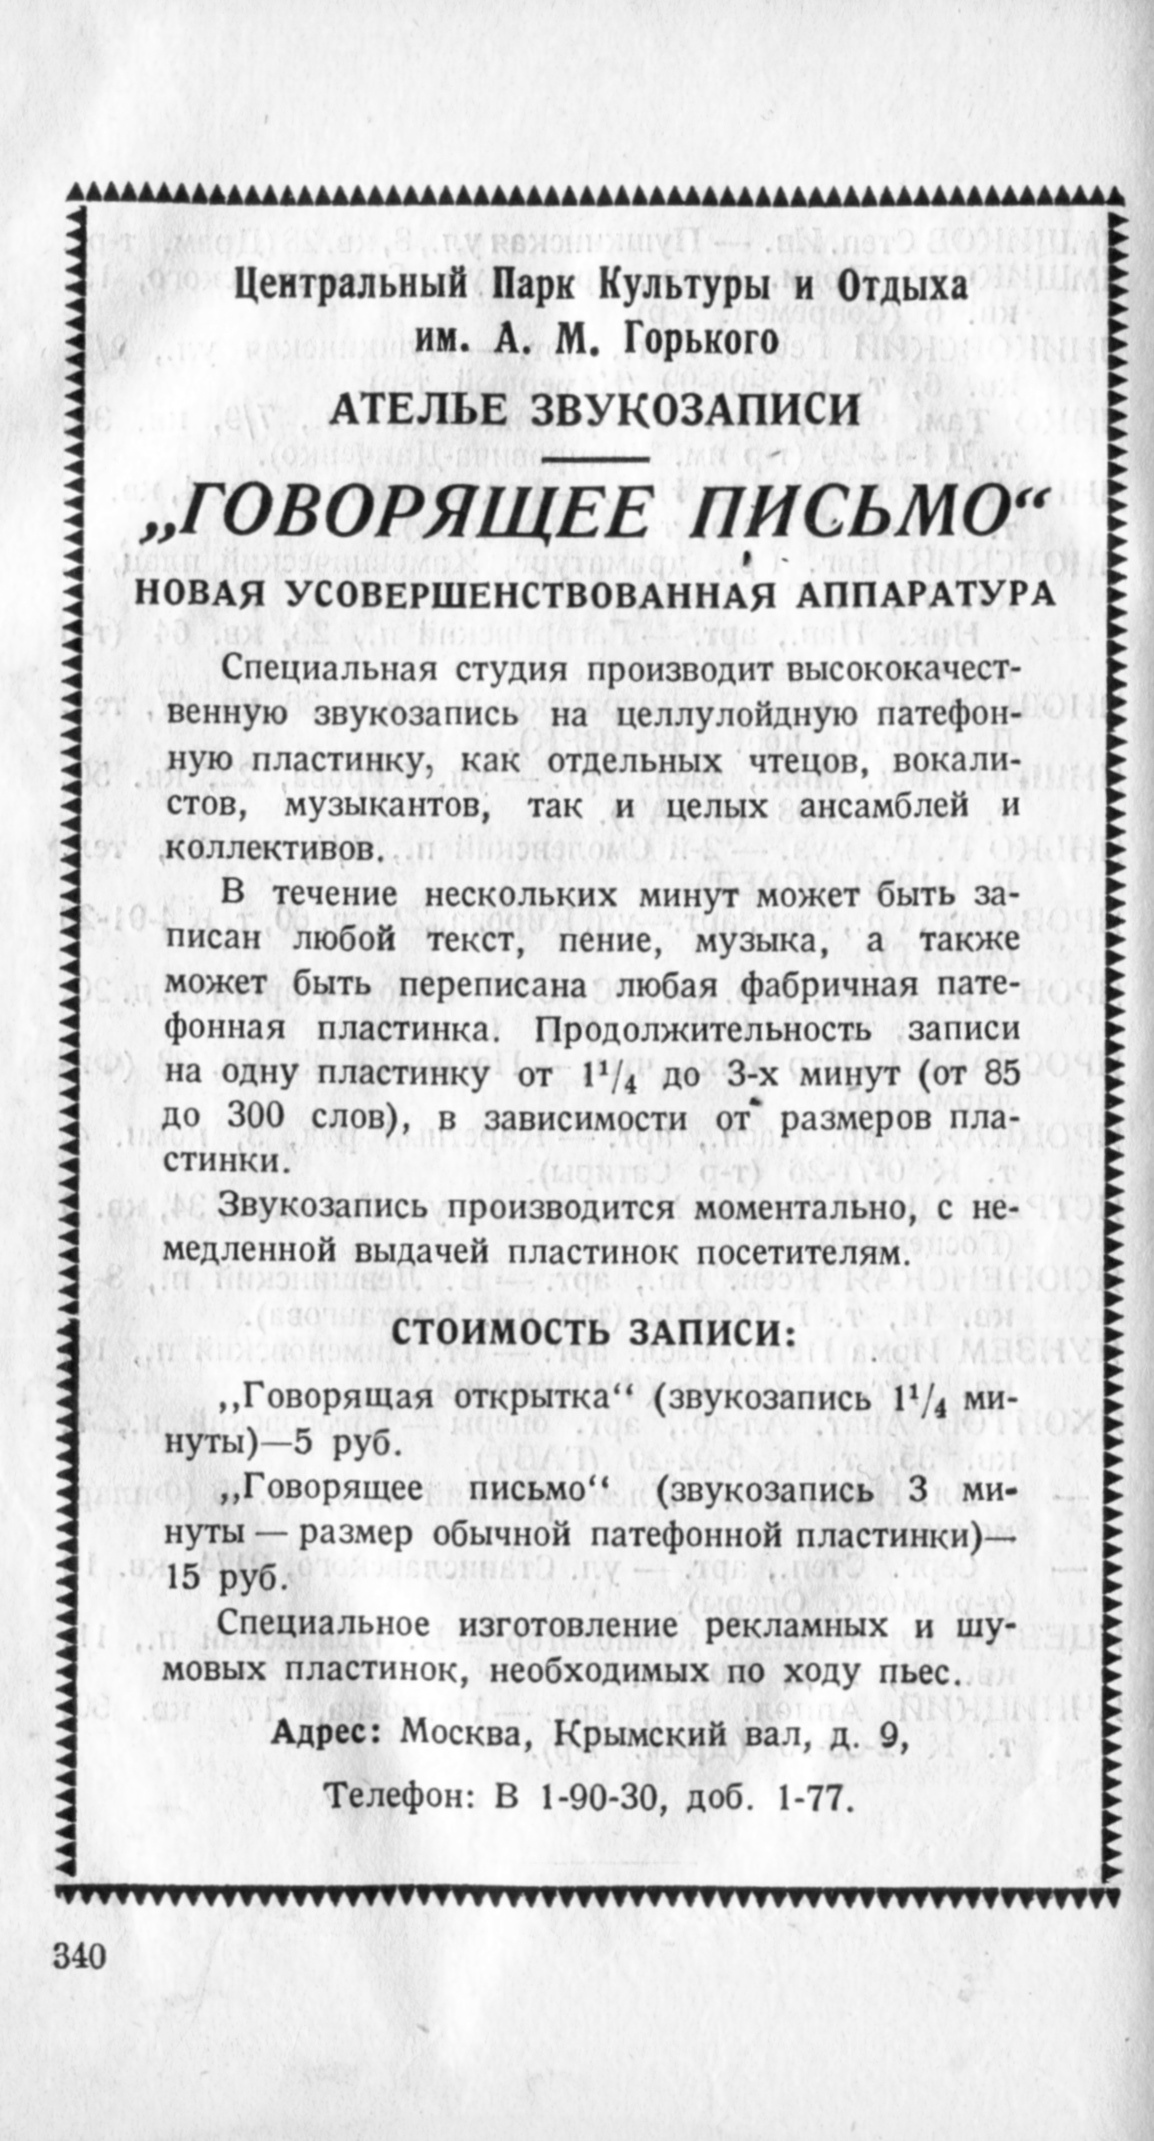 Реклама Ателье звукозаписи в Парке им. Горького